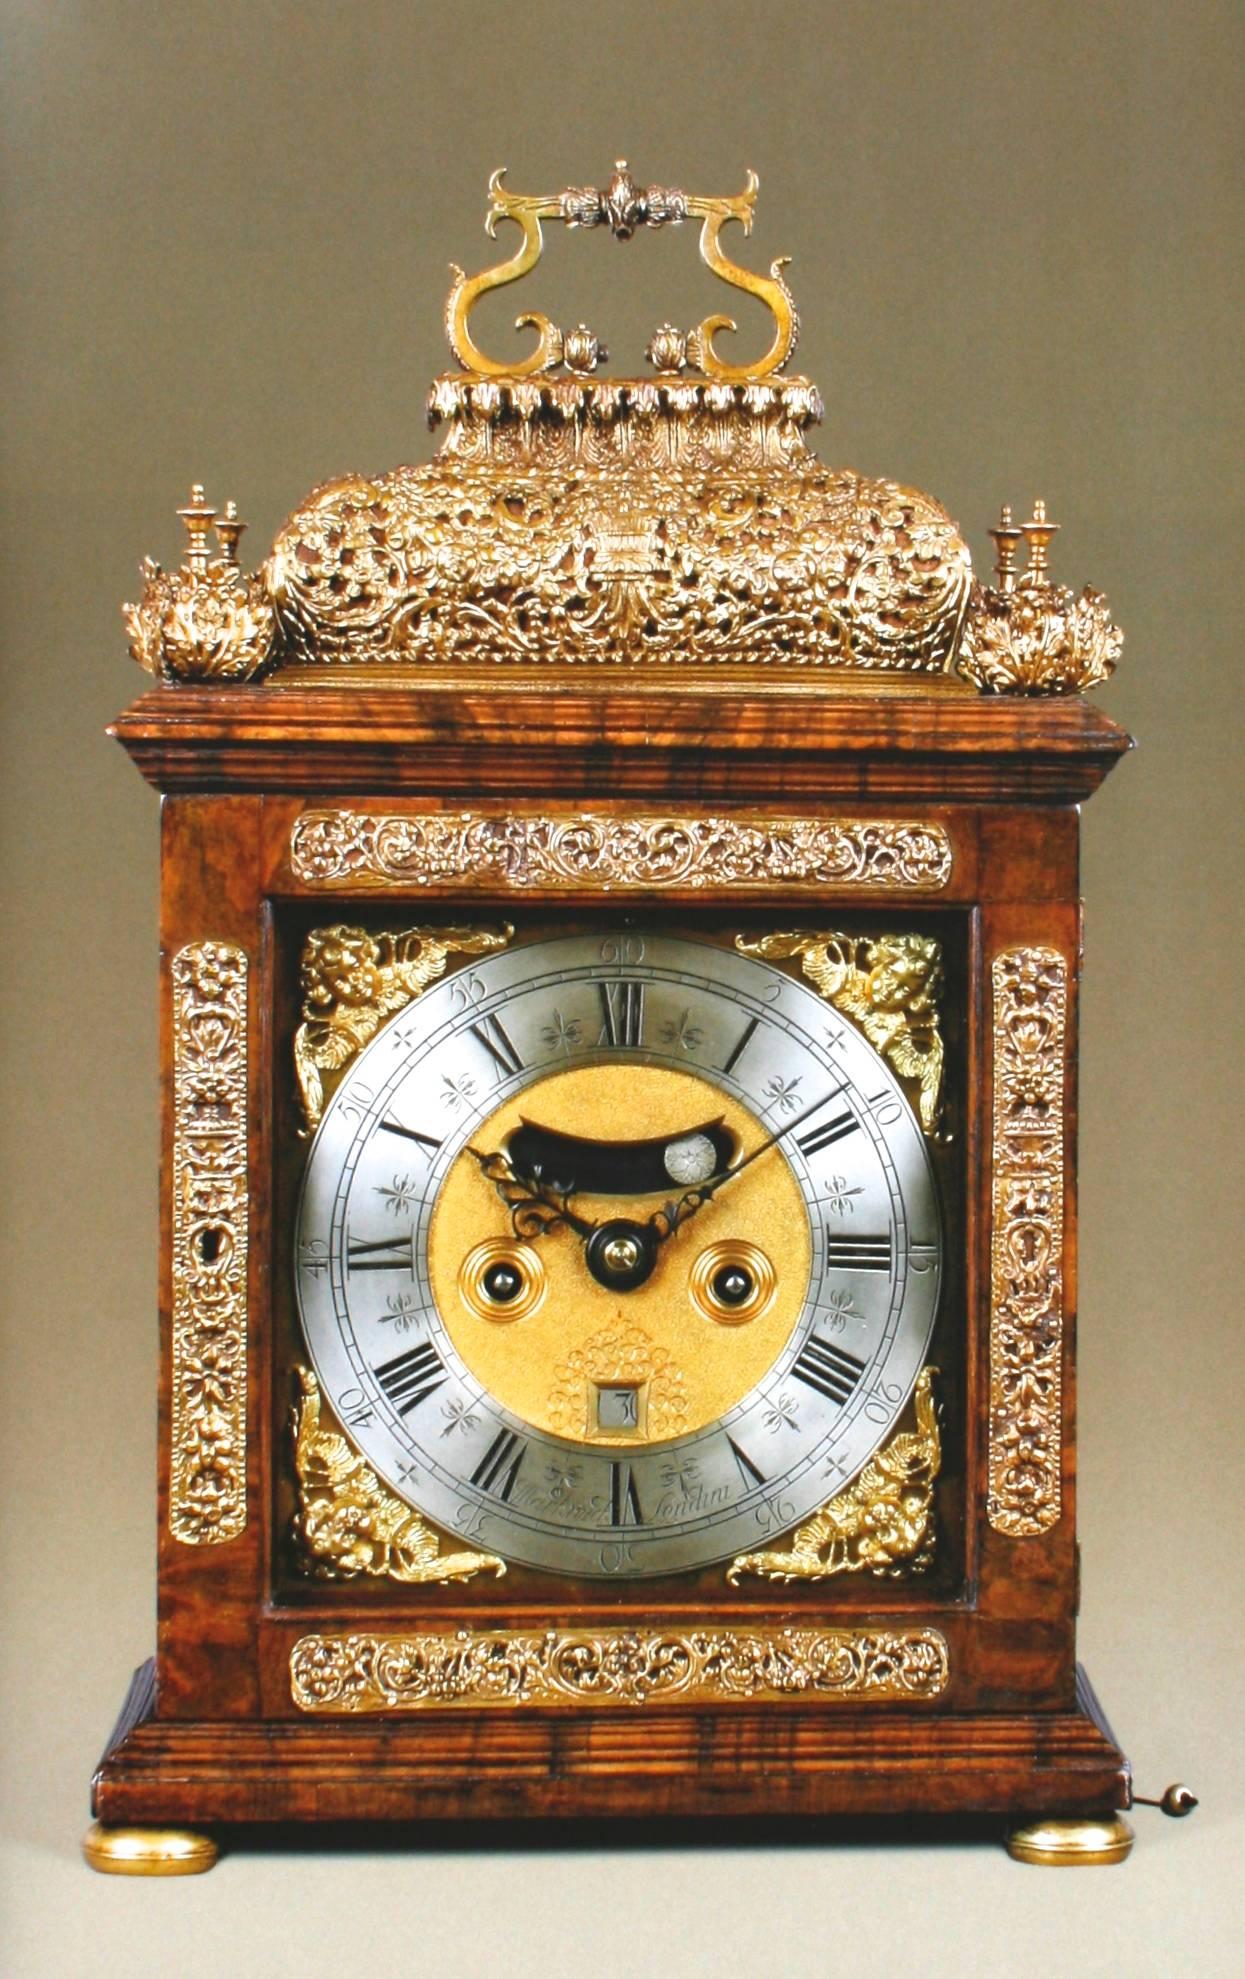 Paper Howard Walwyn Fine Antique Clocks Catalogue For Sale